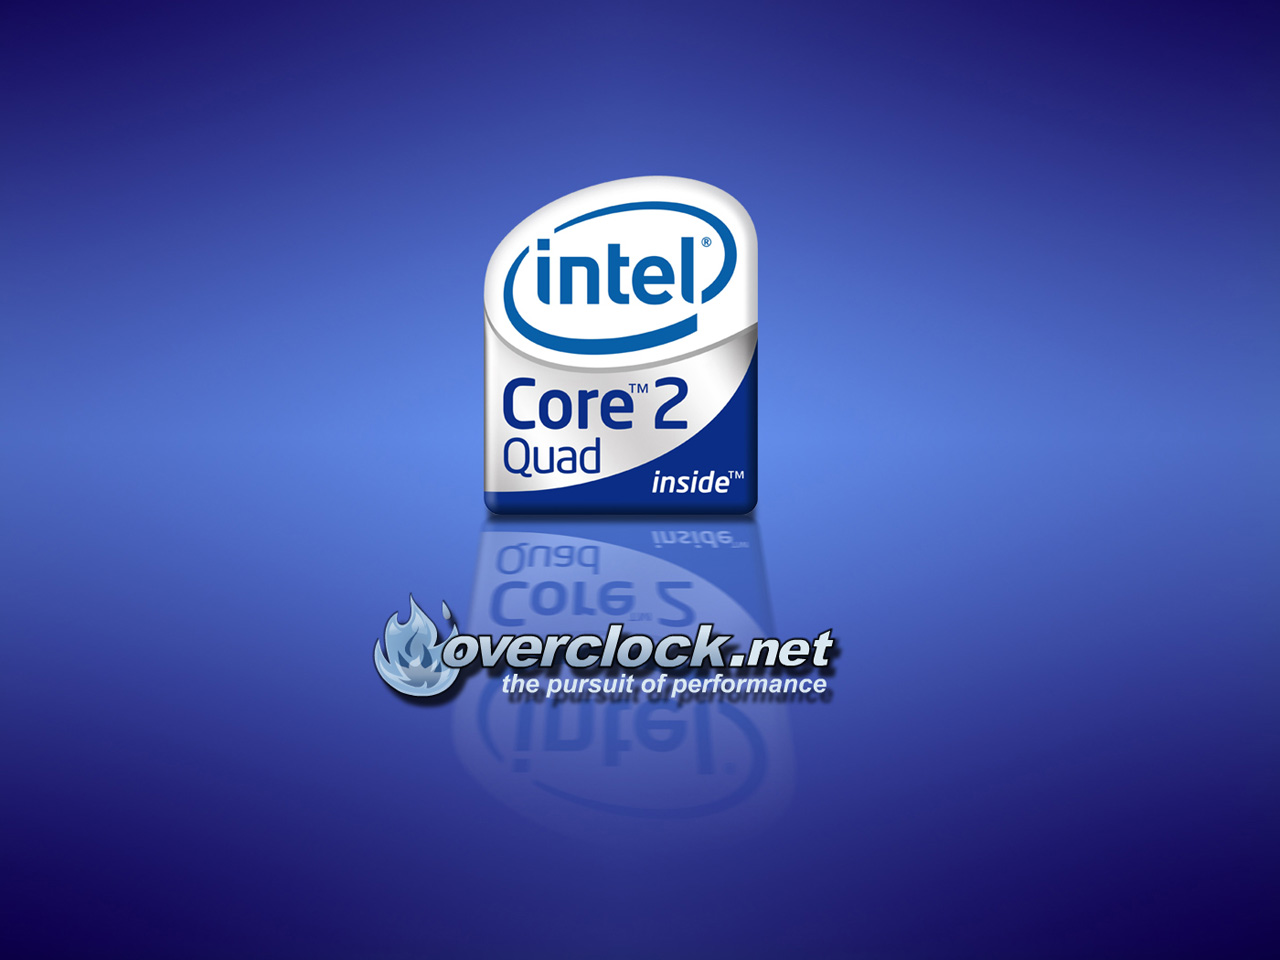 Intel Corel 2 Quad Logomarca 4K HD Wallpaper